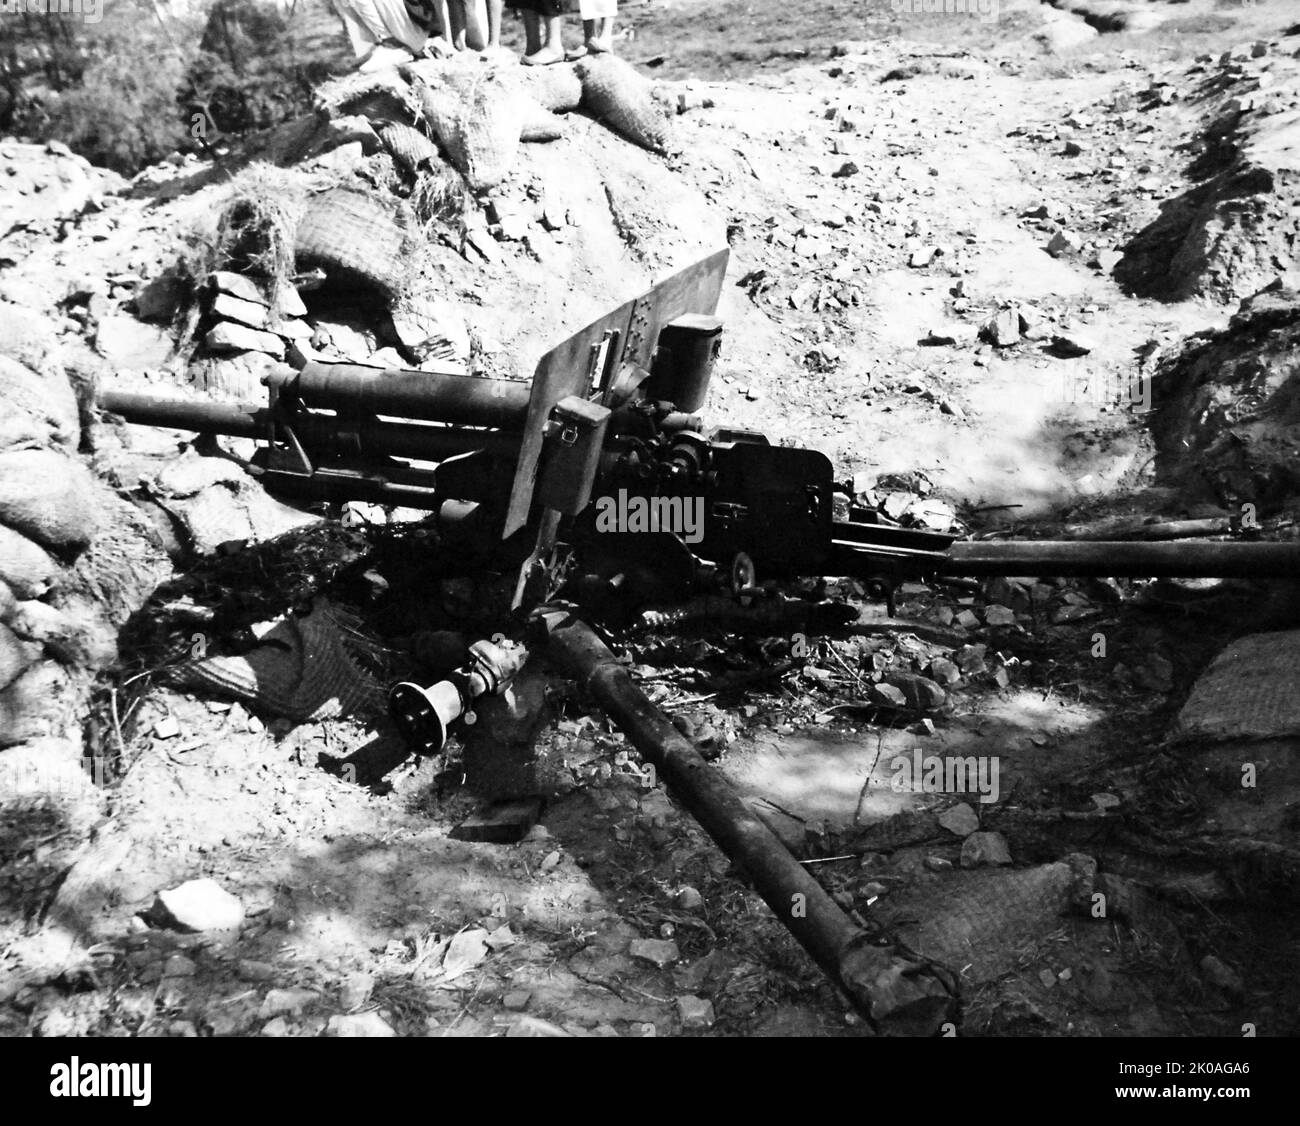 Inchon Landing, settembre 1950. Collocazione dell'artiglieria nordcoreana, 20 settembre 1950, possibilmente fotografata dopo l'invasione dell'Inchon. Foto Stock